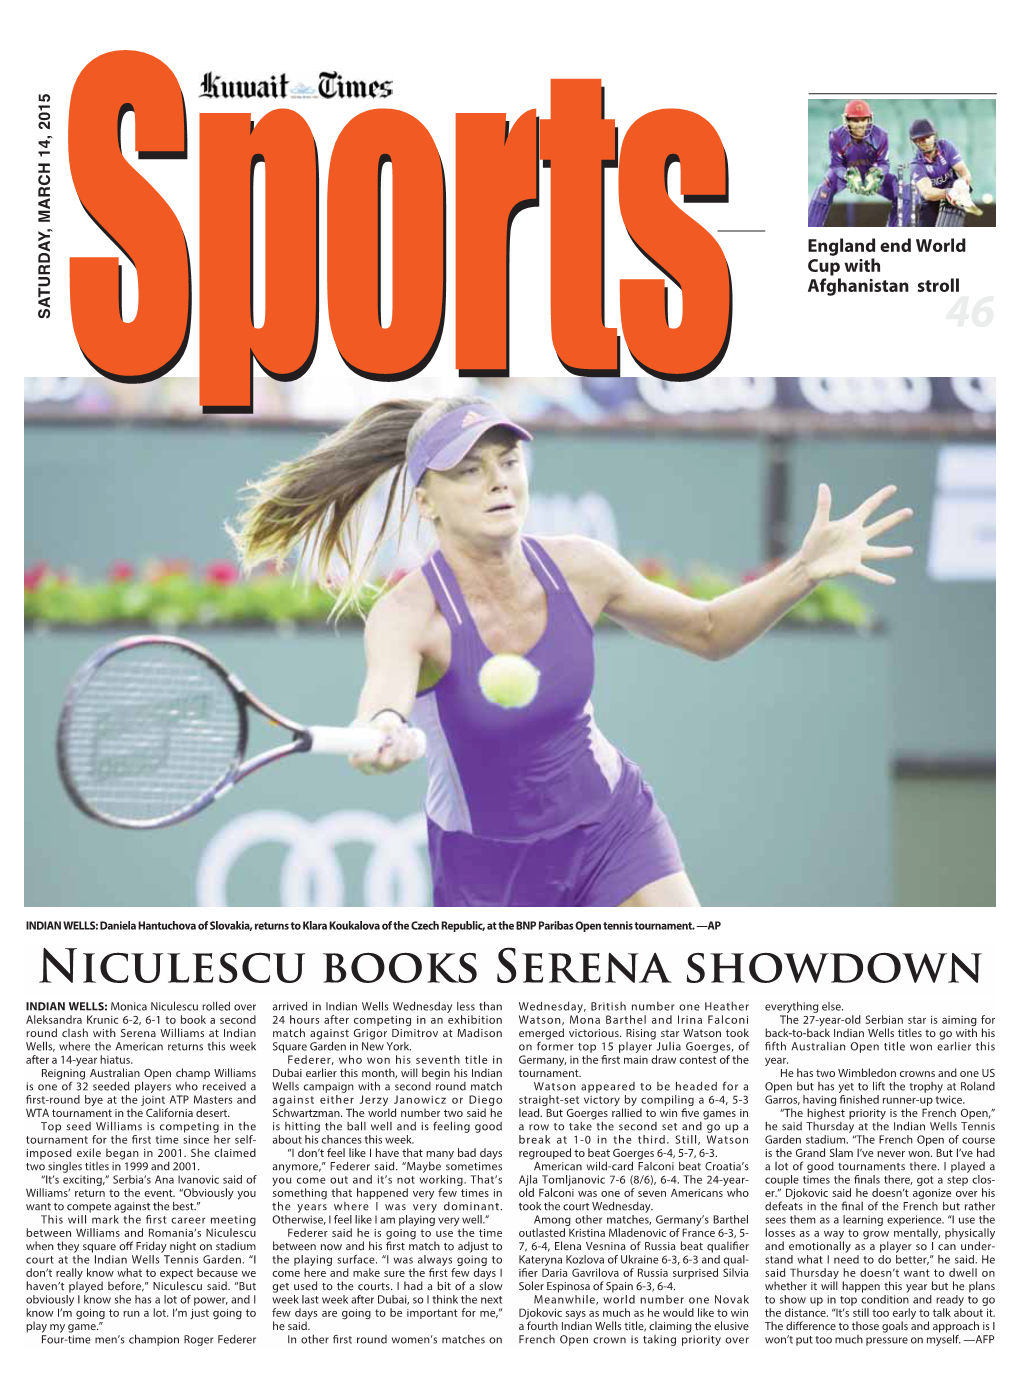 Niculescu Books Serena Showdown